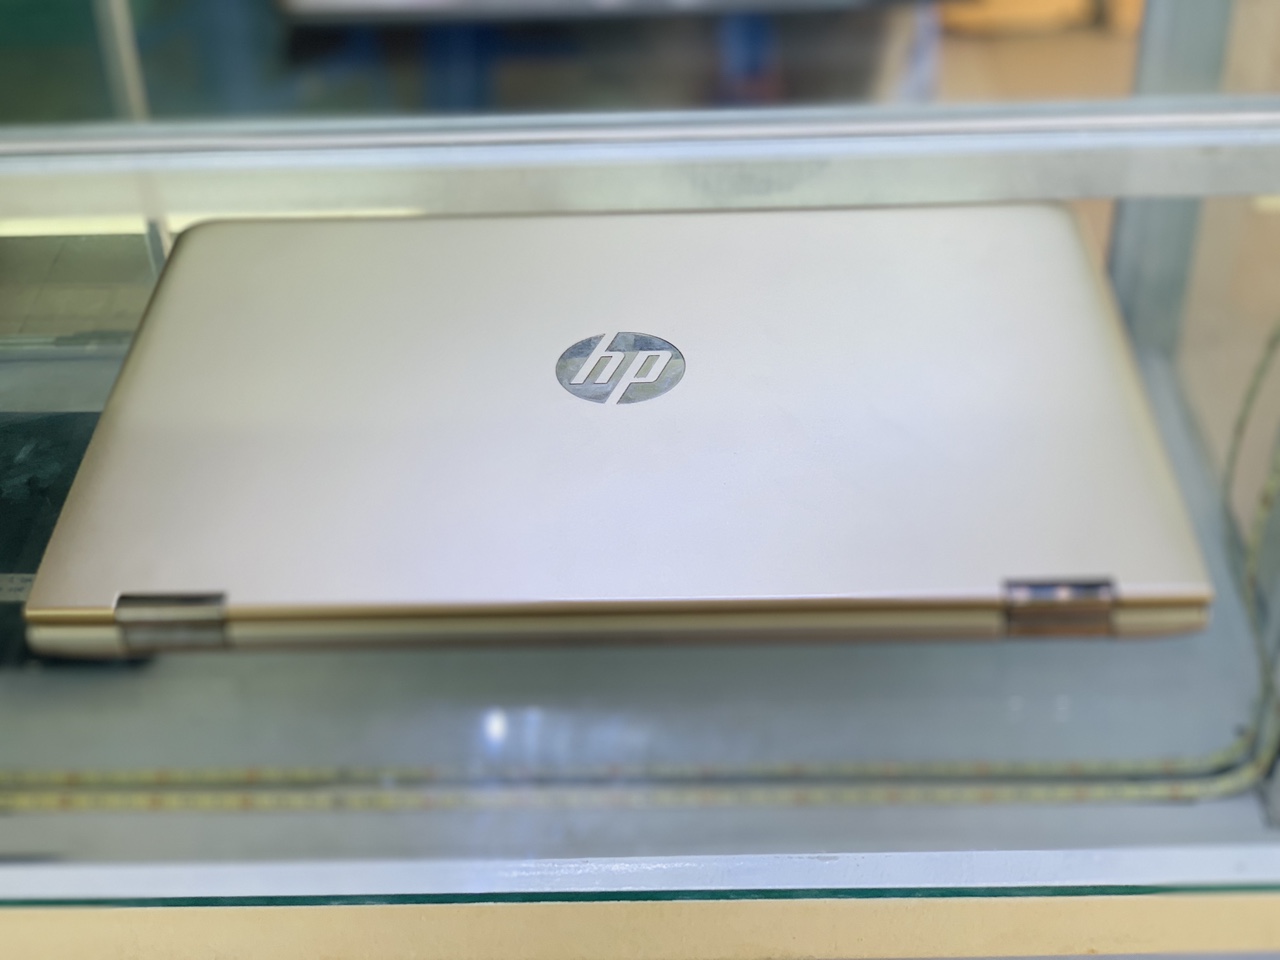 Địa chỉ cung cấp laptop hp cũ giá rẻ chất lượng tại TPHCM